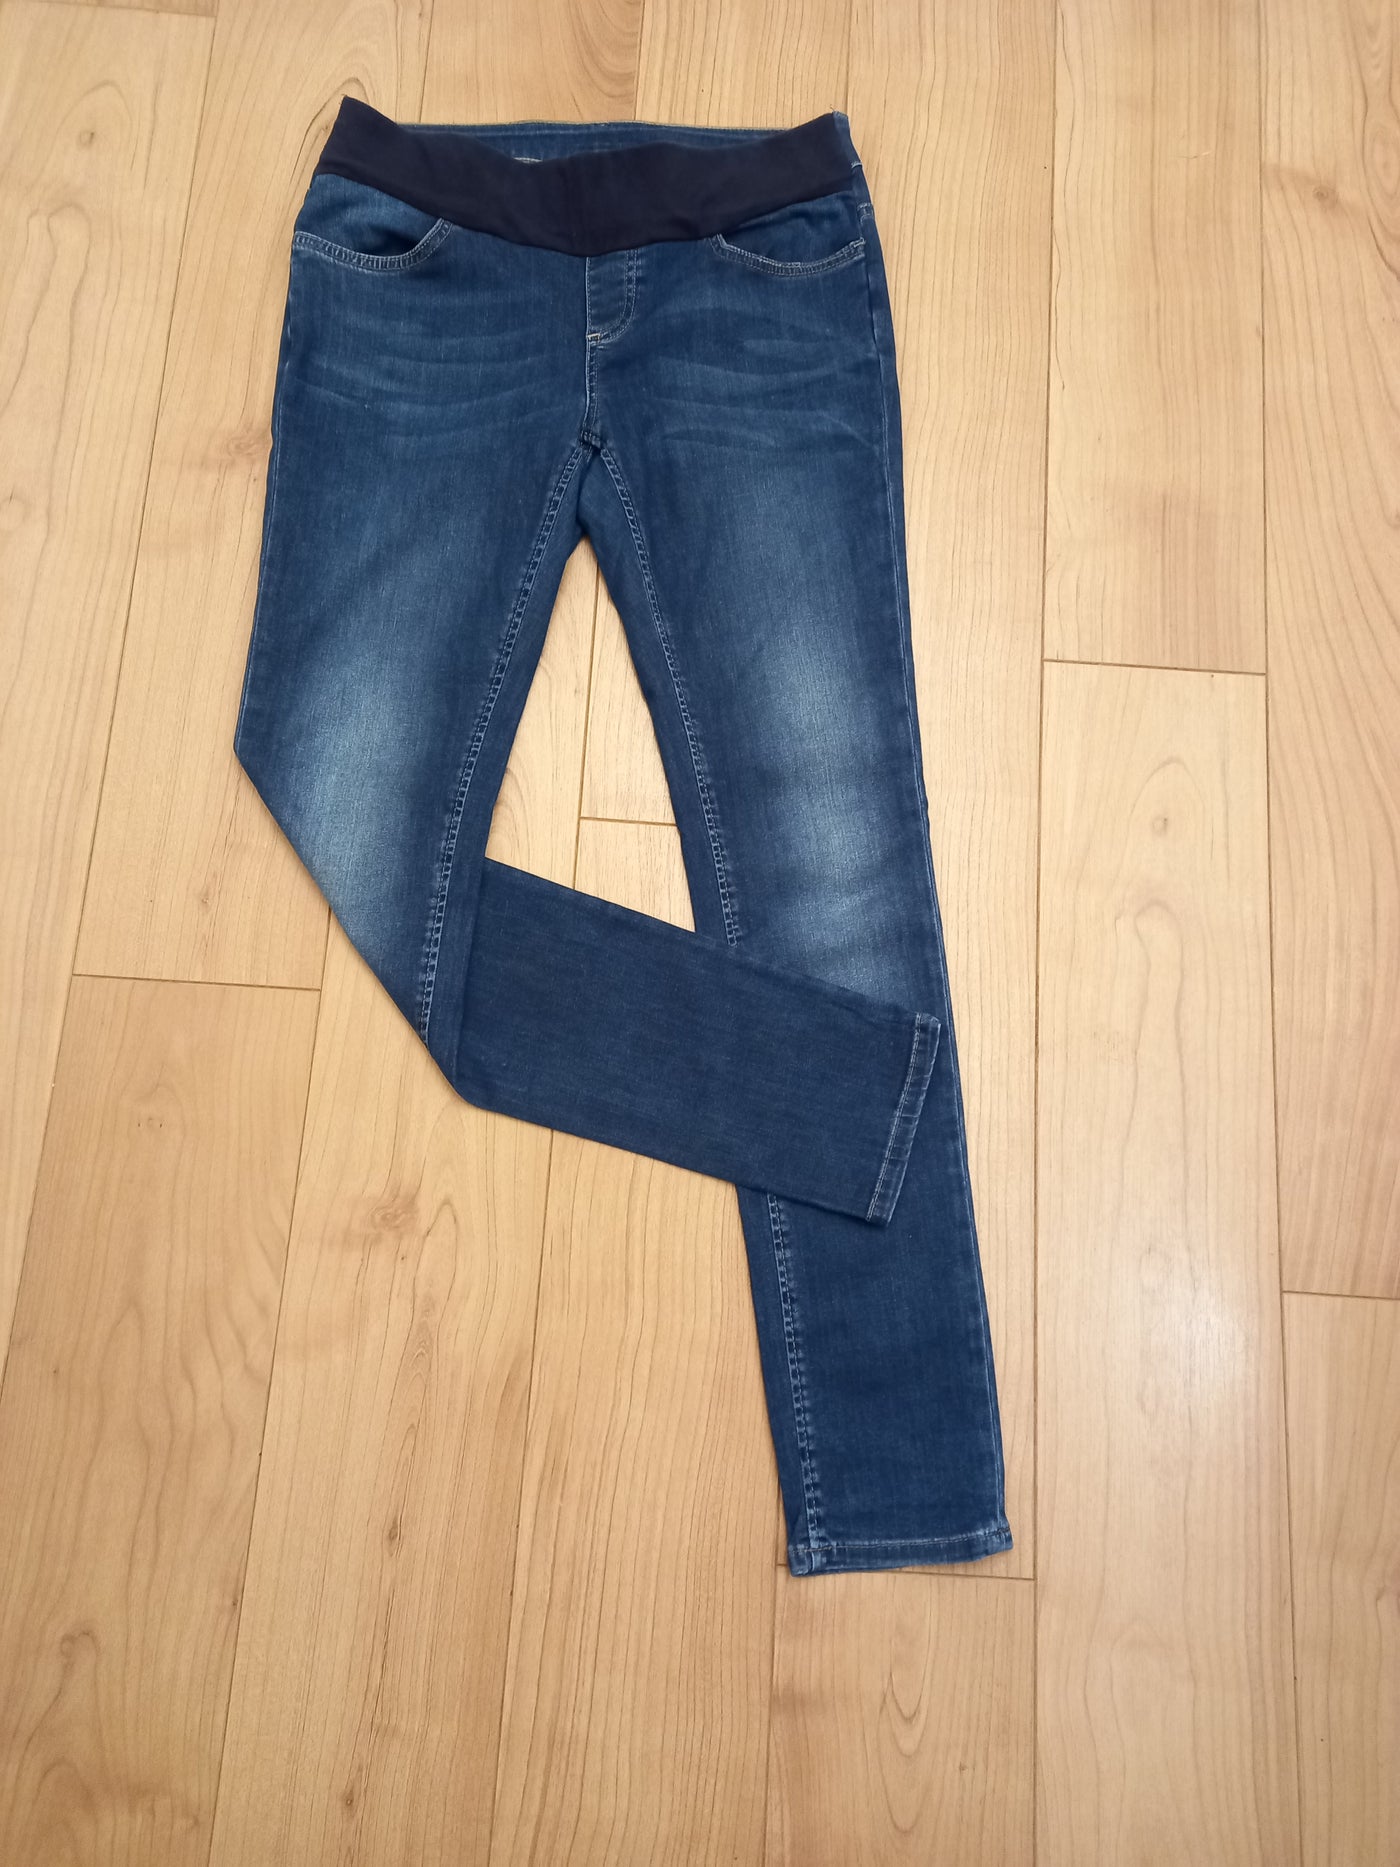 Seraphine dark blue underbump jeans - Size 10